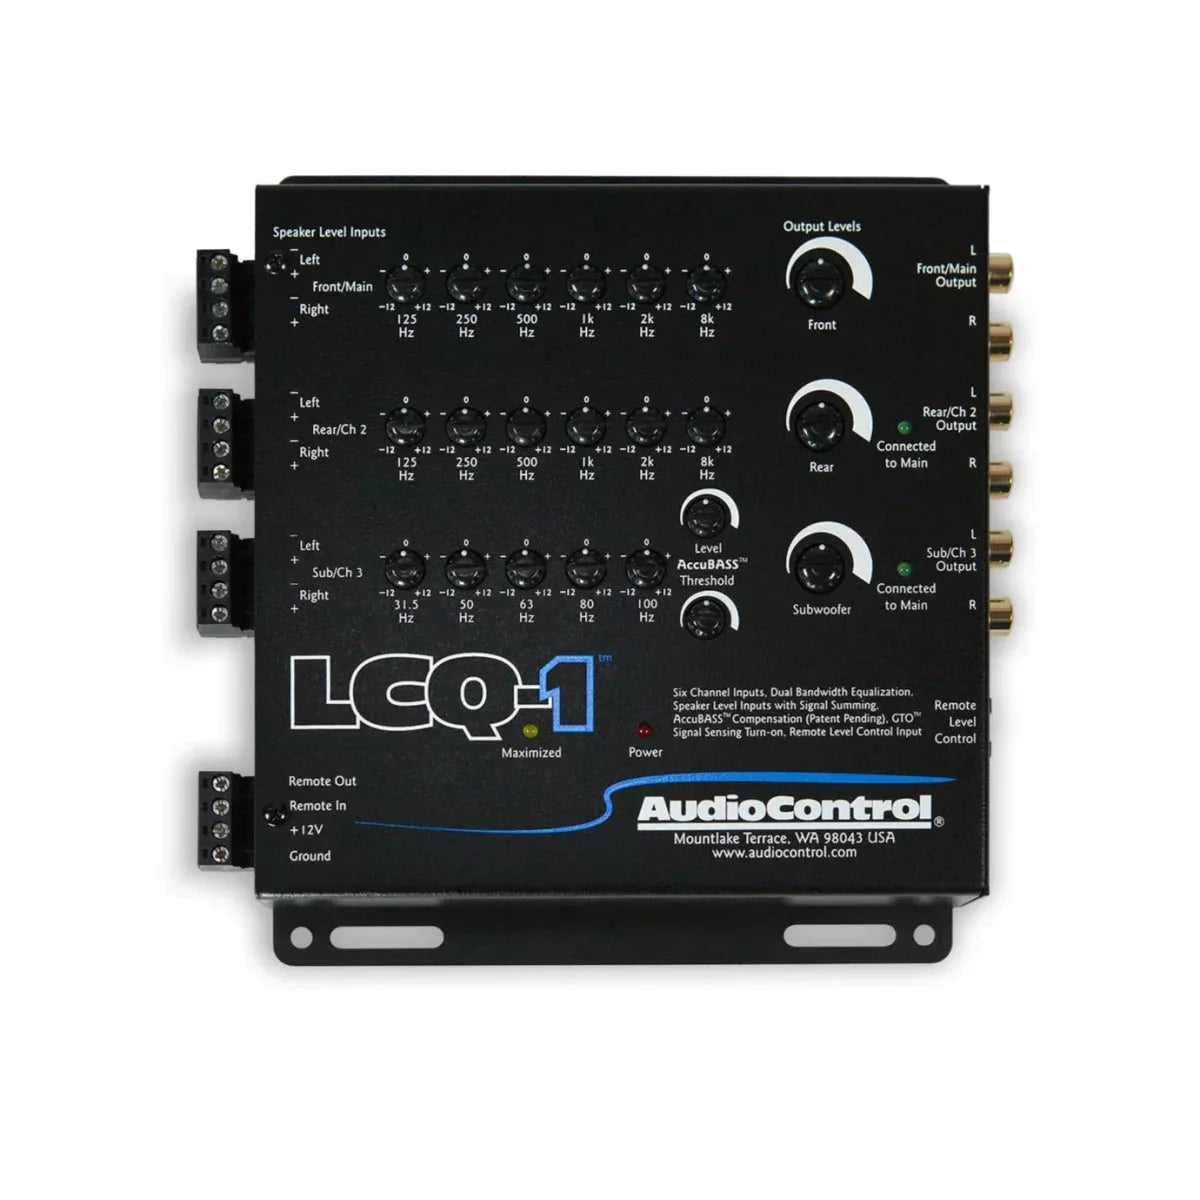 Audiocontrol-LCQ-1-High-Low Adapter-Masori.de